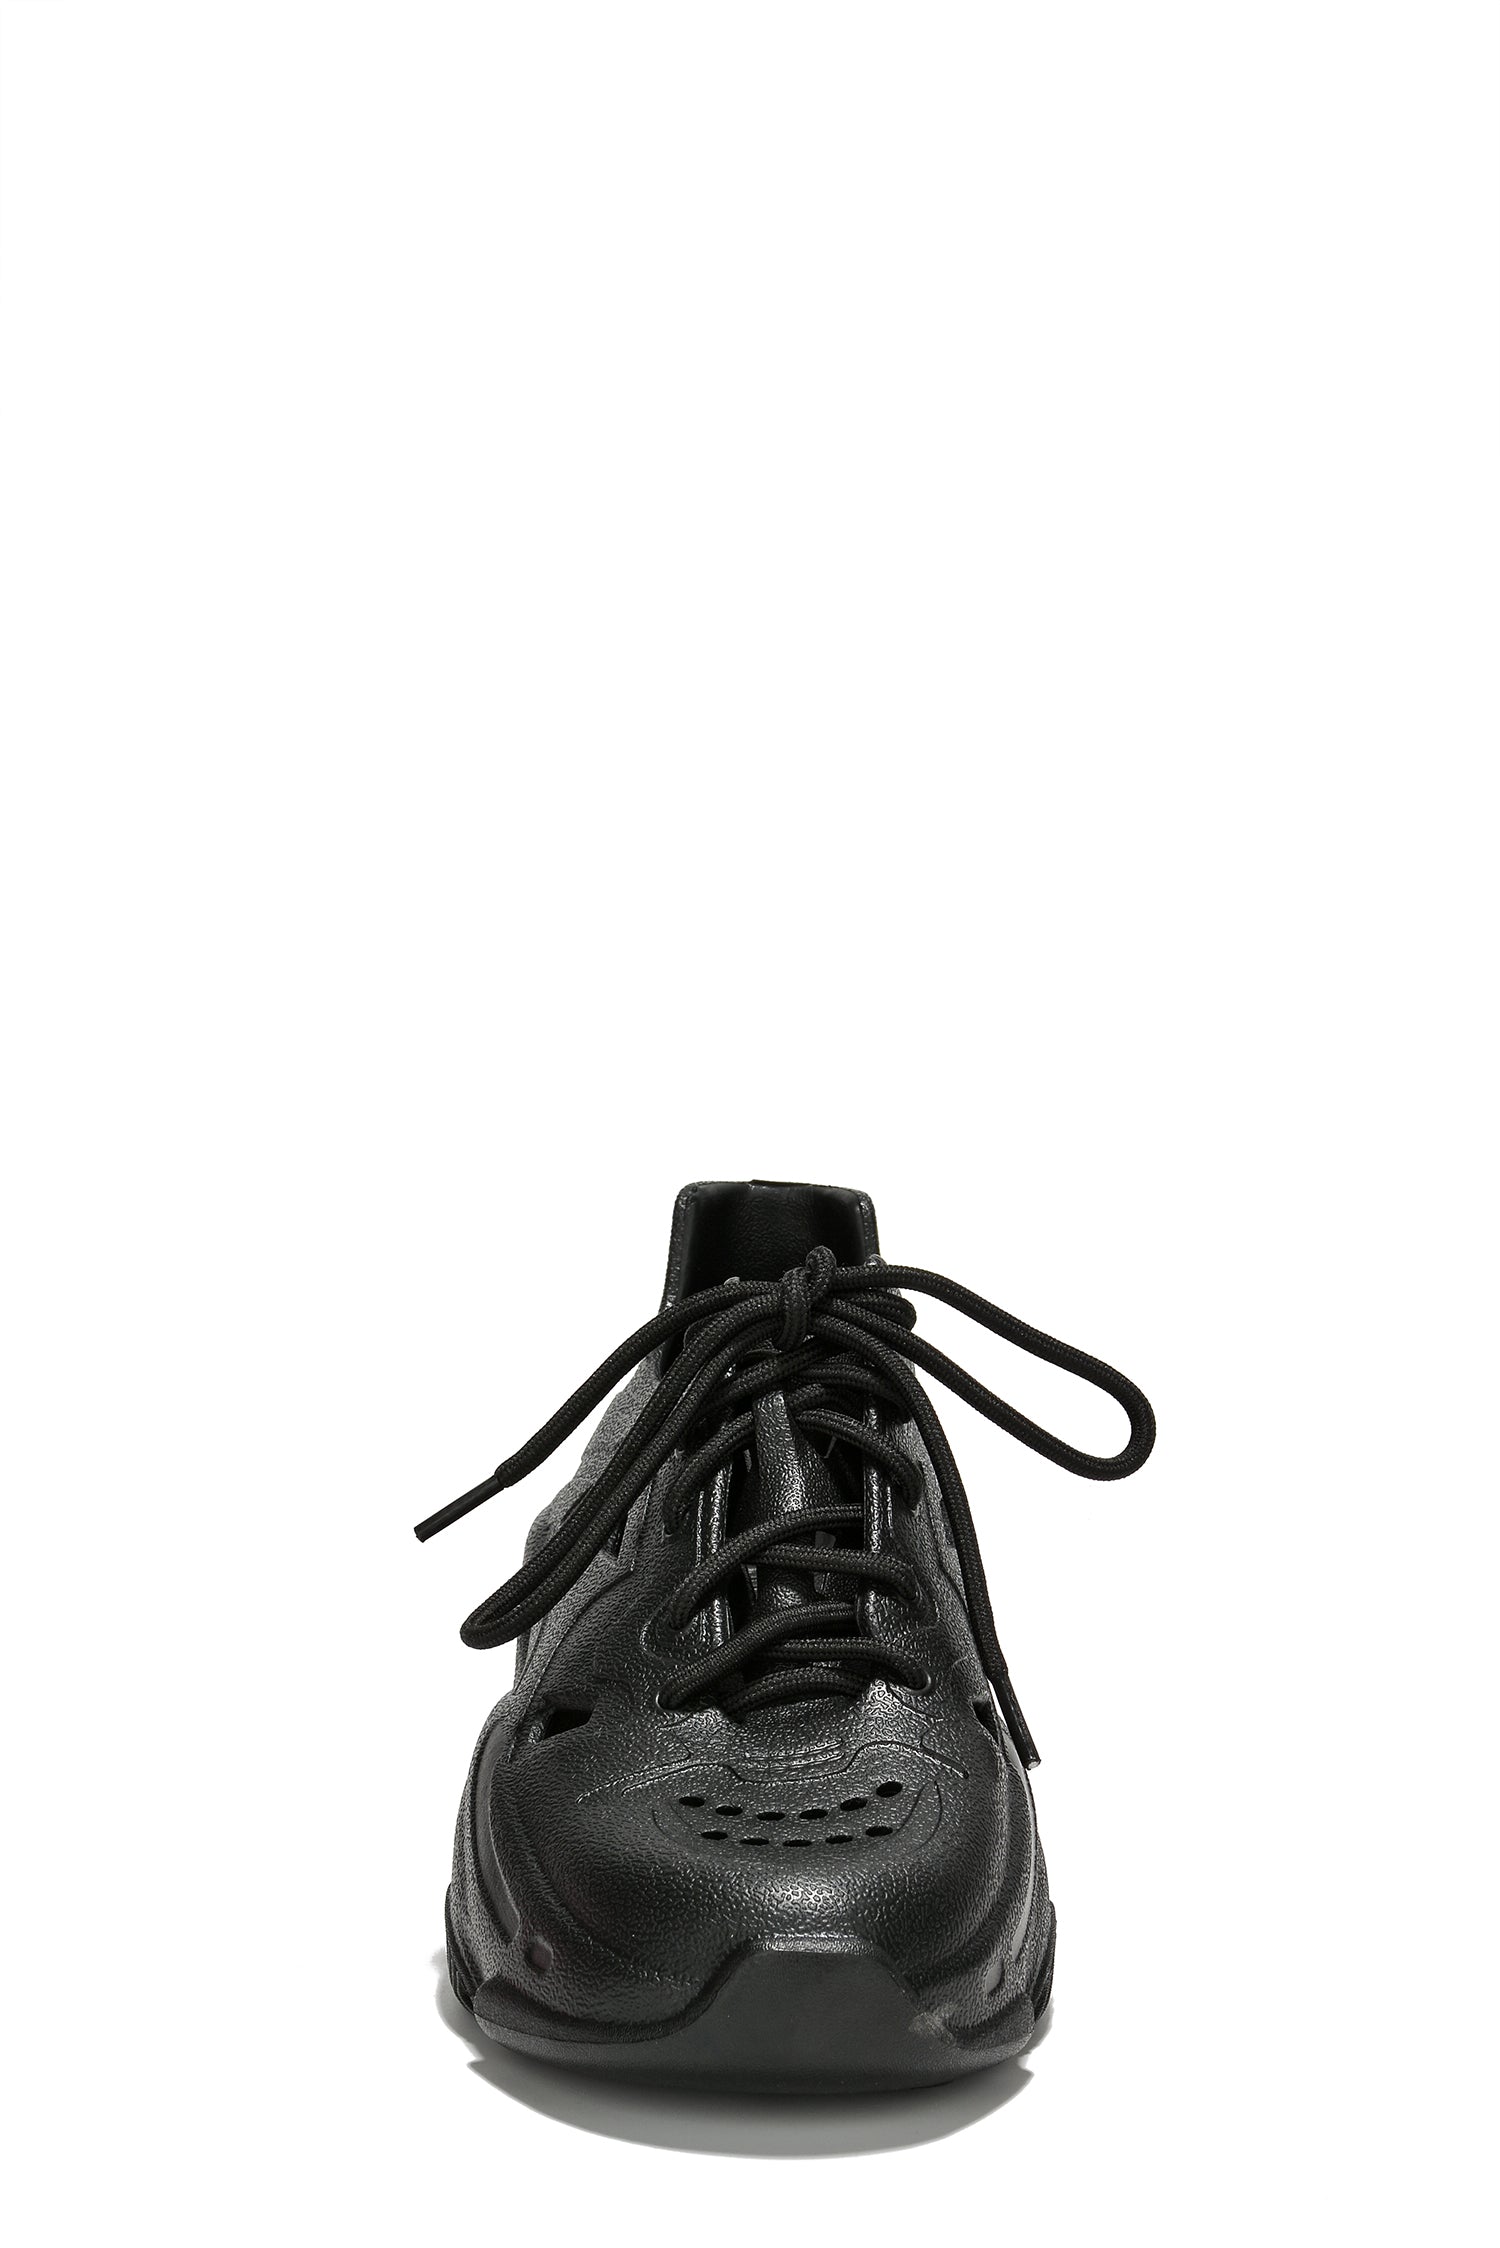 UrbanOG - Elin Low Cut Lug Sole Chunky Sneakers - SNEAKERS